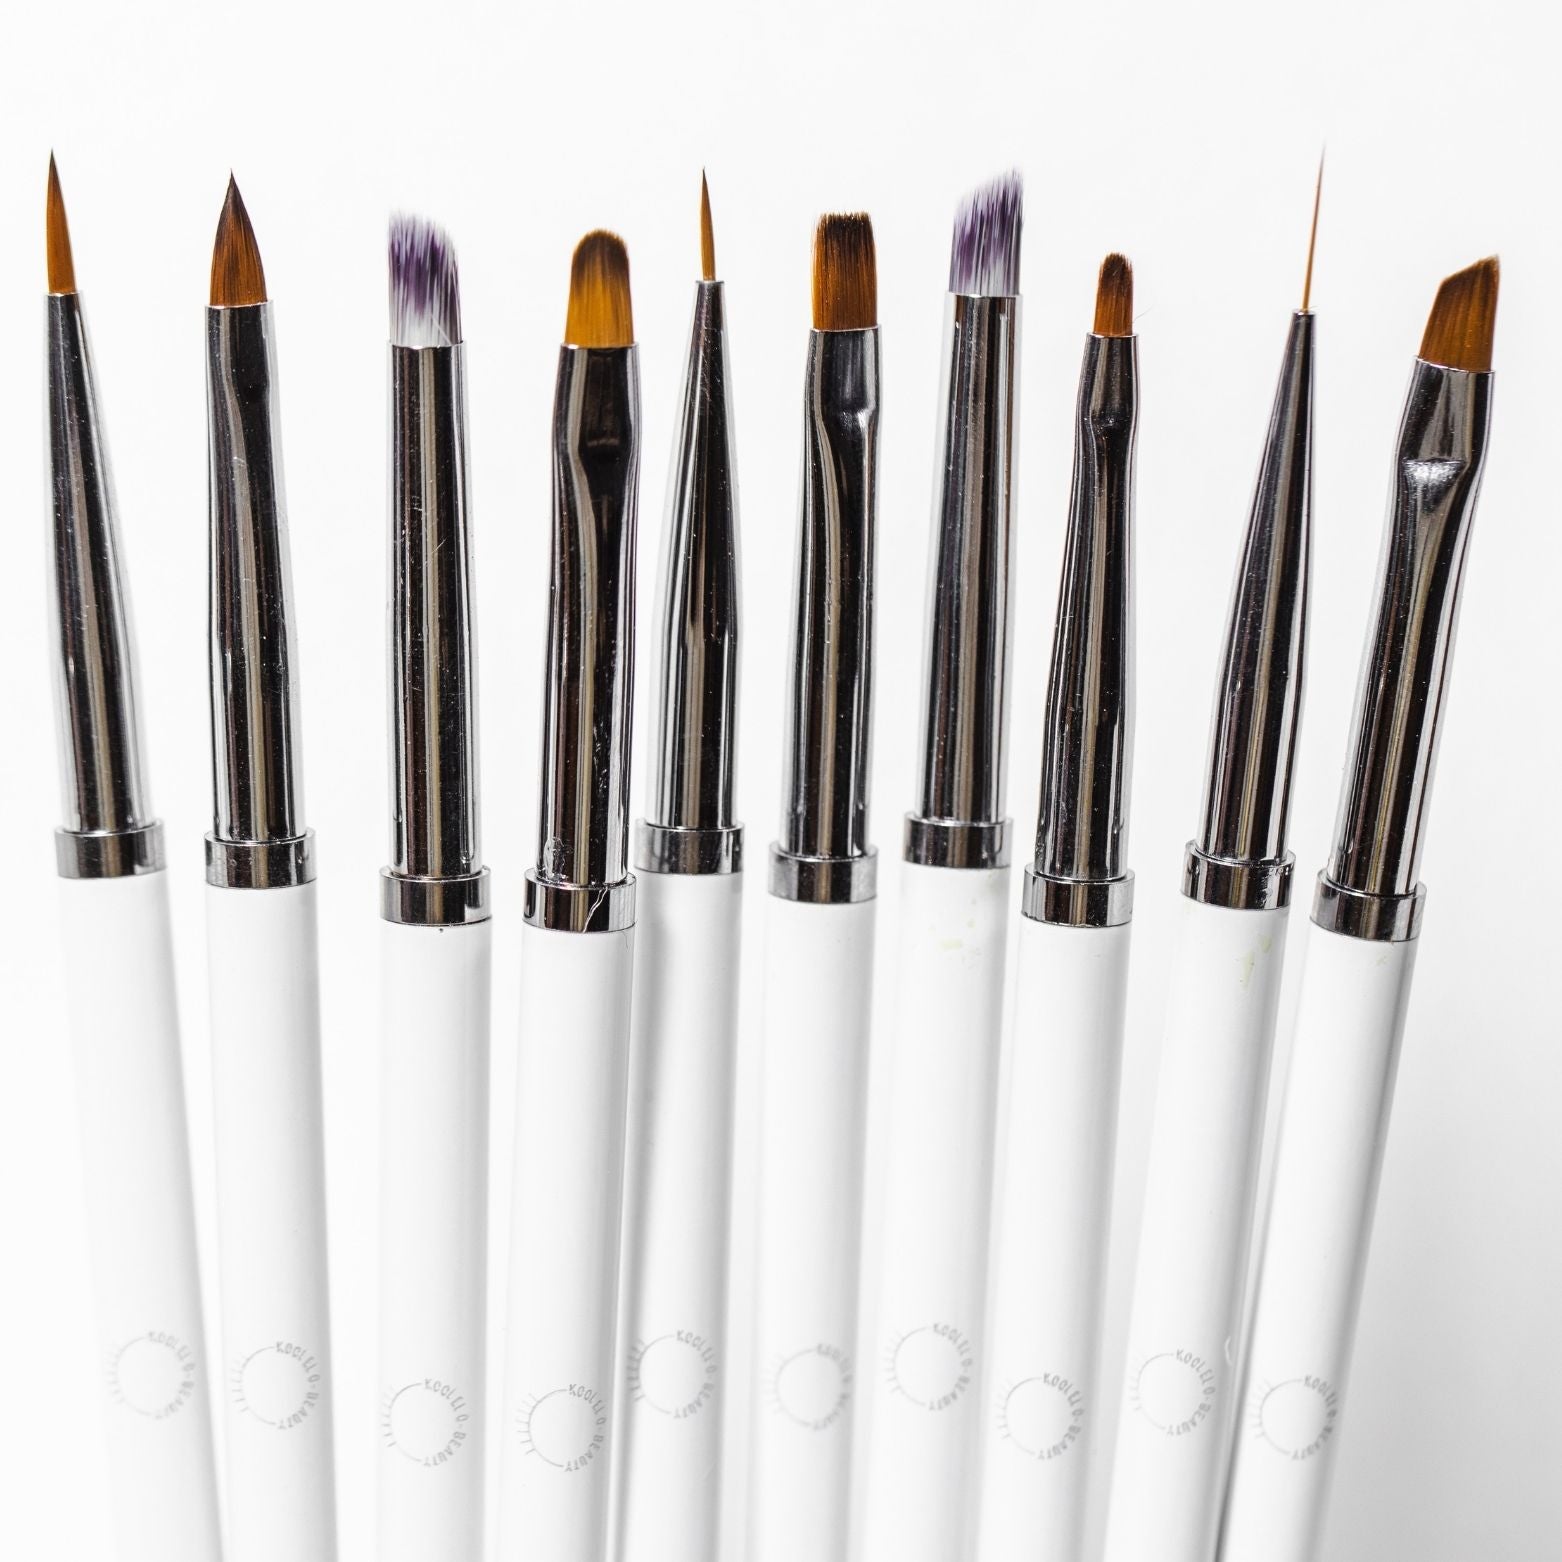 Nail art brush set 10 pieces – Swiss K Beauty